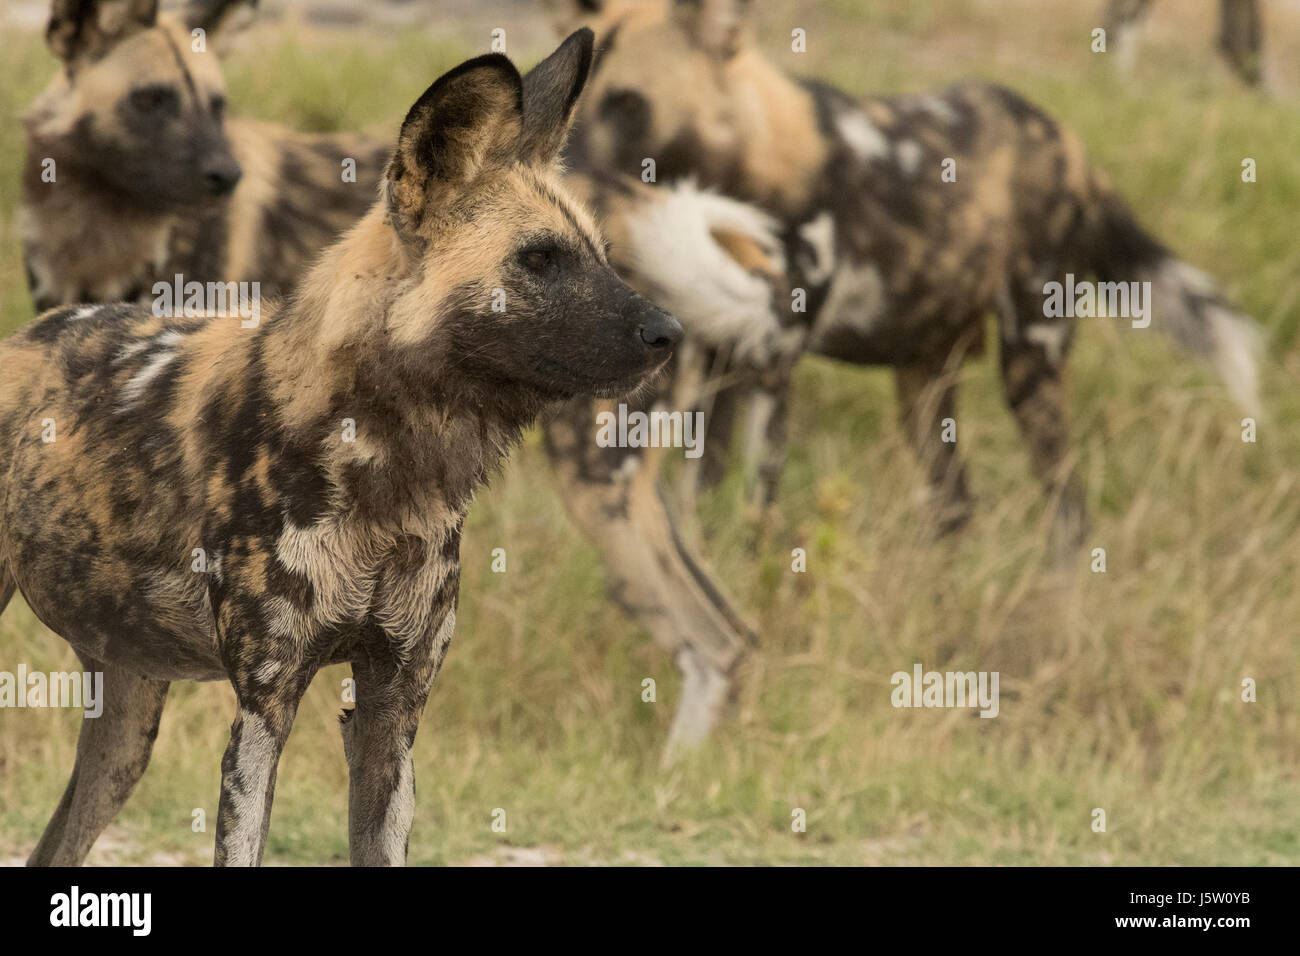 Les chiens de chasse du Cap également connu sous le nom de Lycaons en jouant et la chasse dans le Delta de l'Okavango au Botswana Banque D'Images